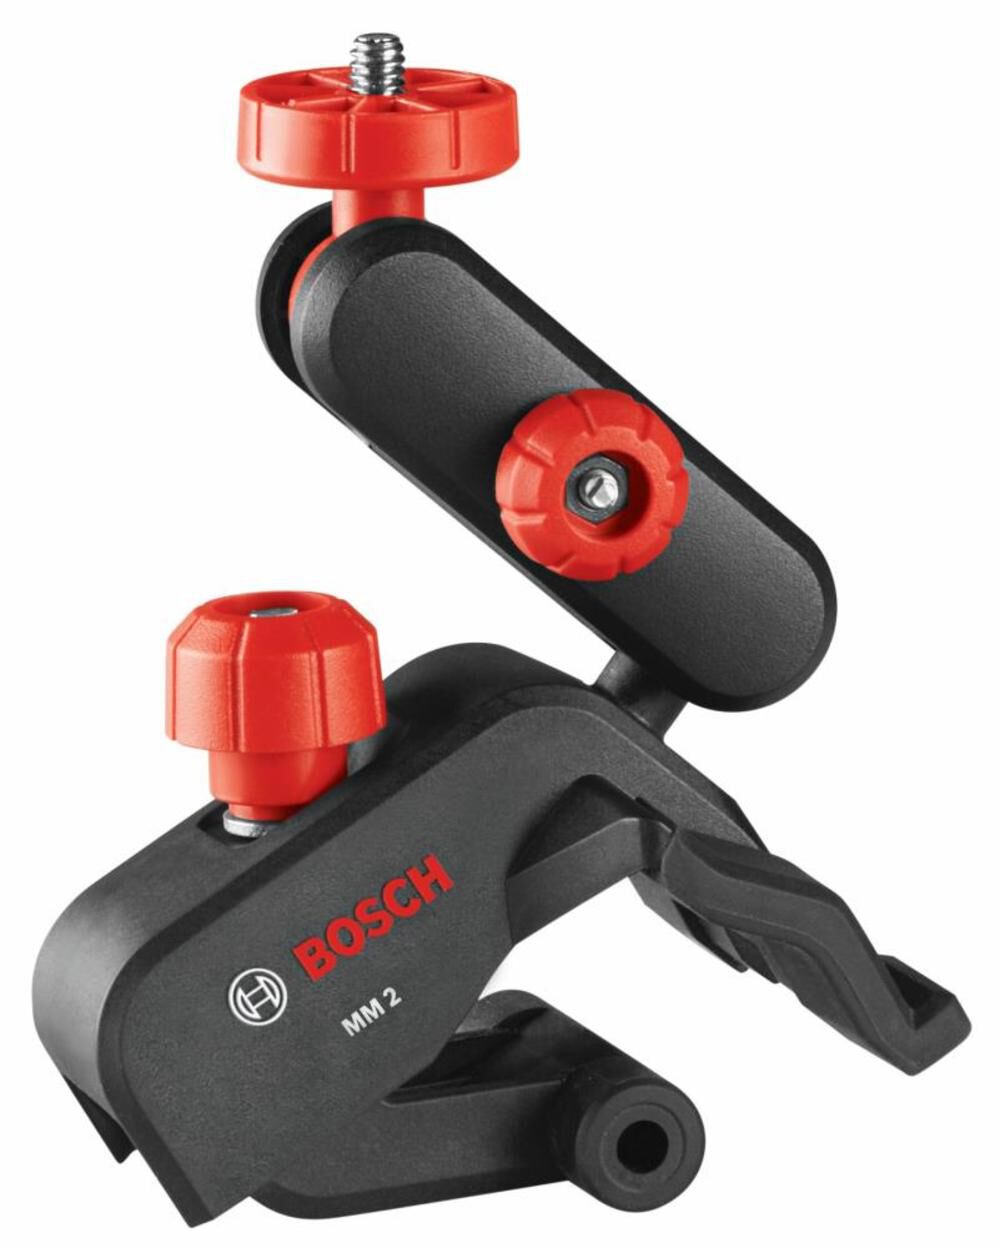 Commentaires en ligne: Bosch Professional 18V System